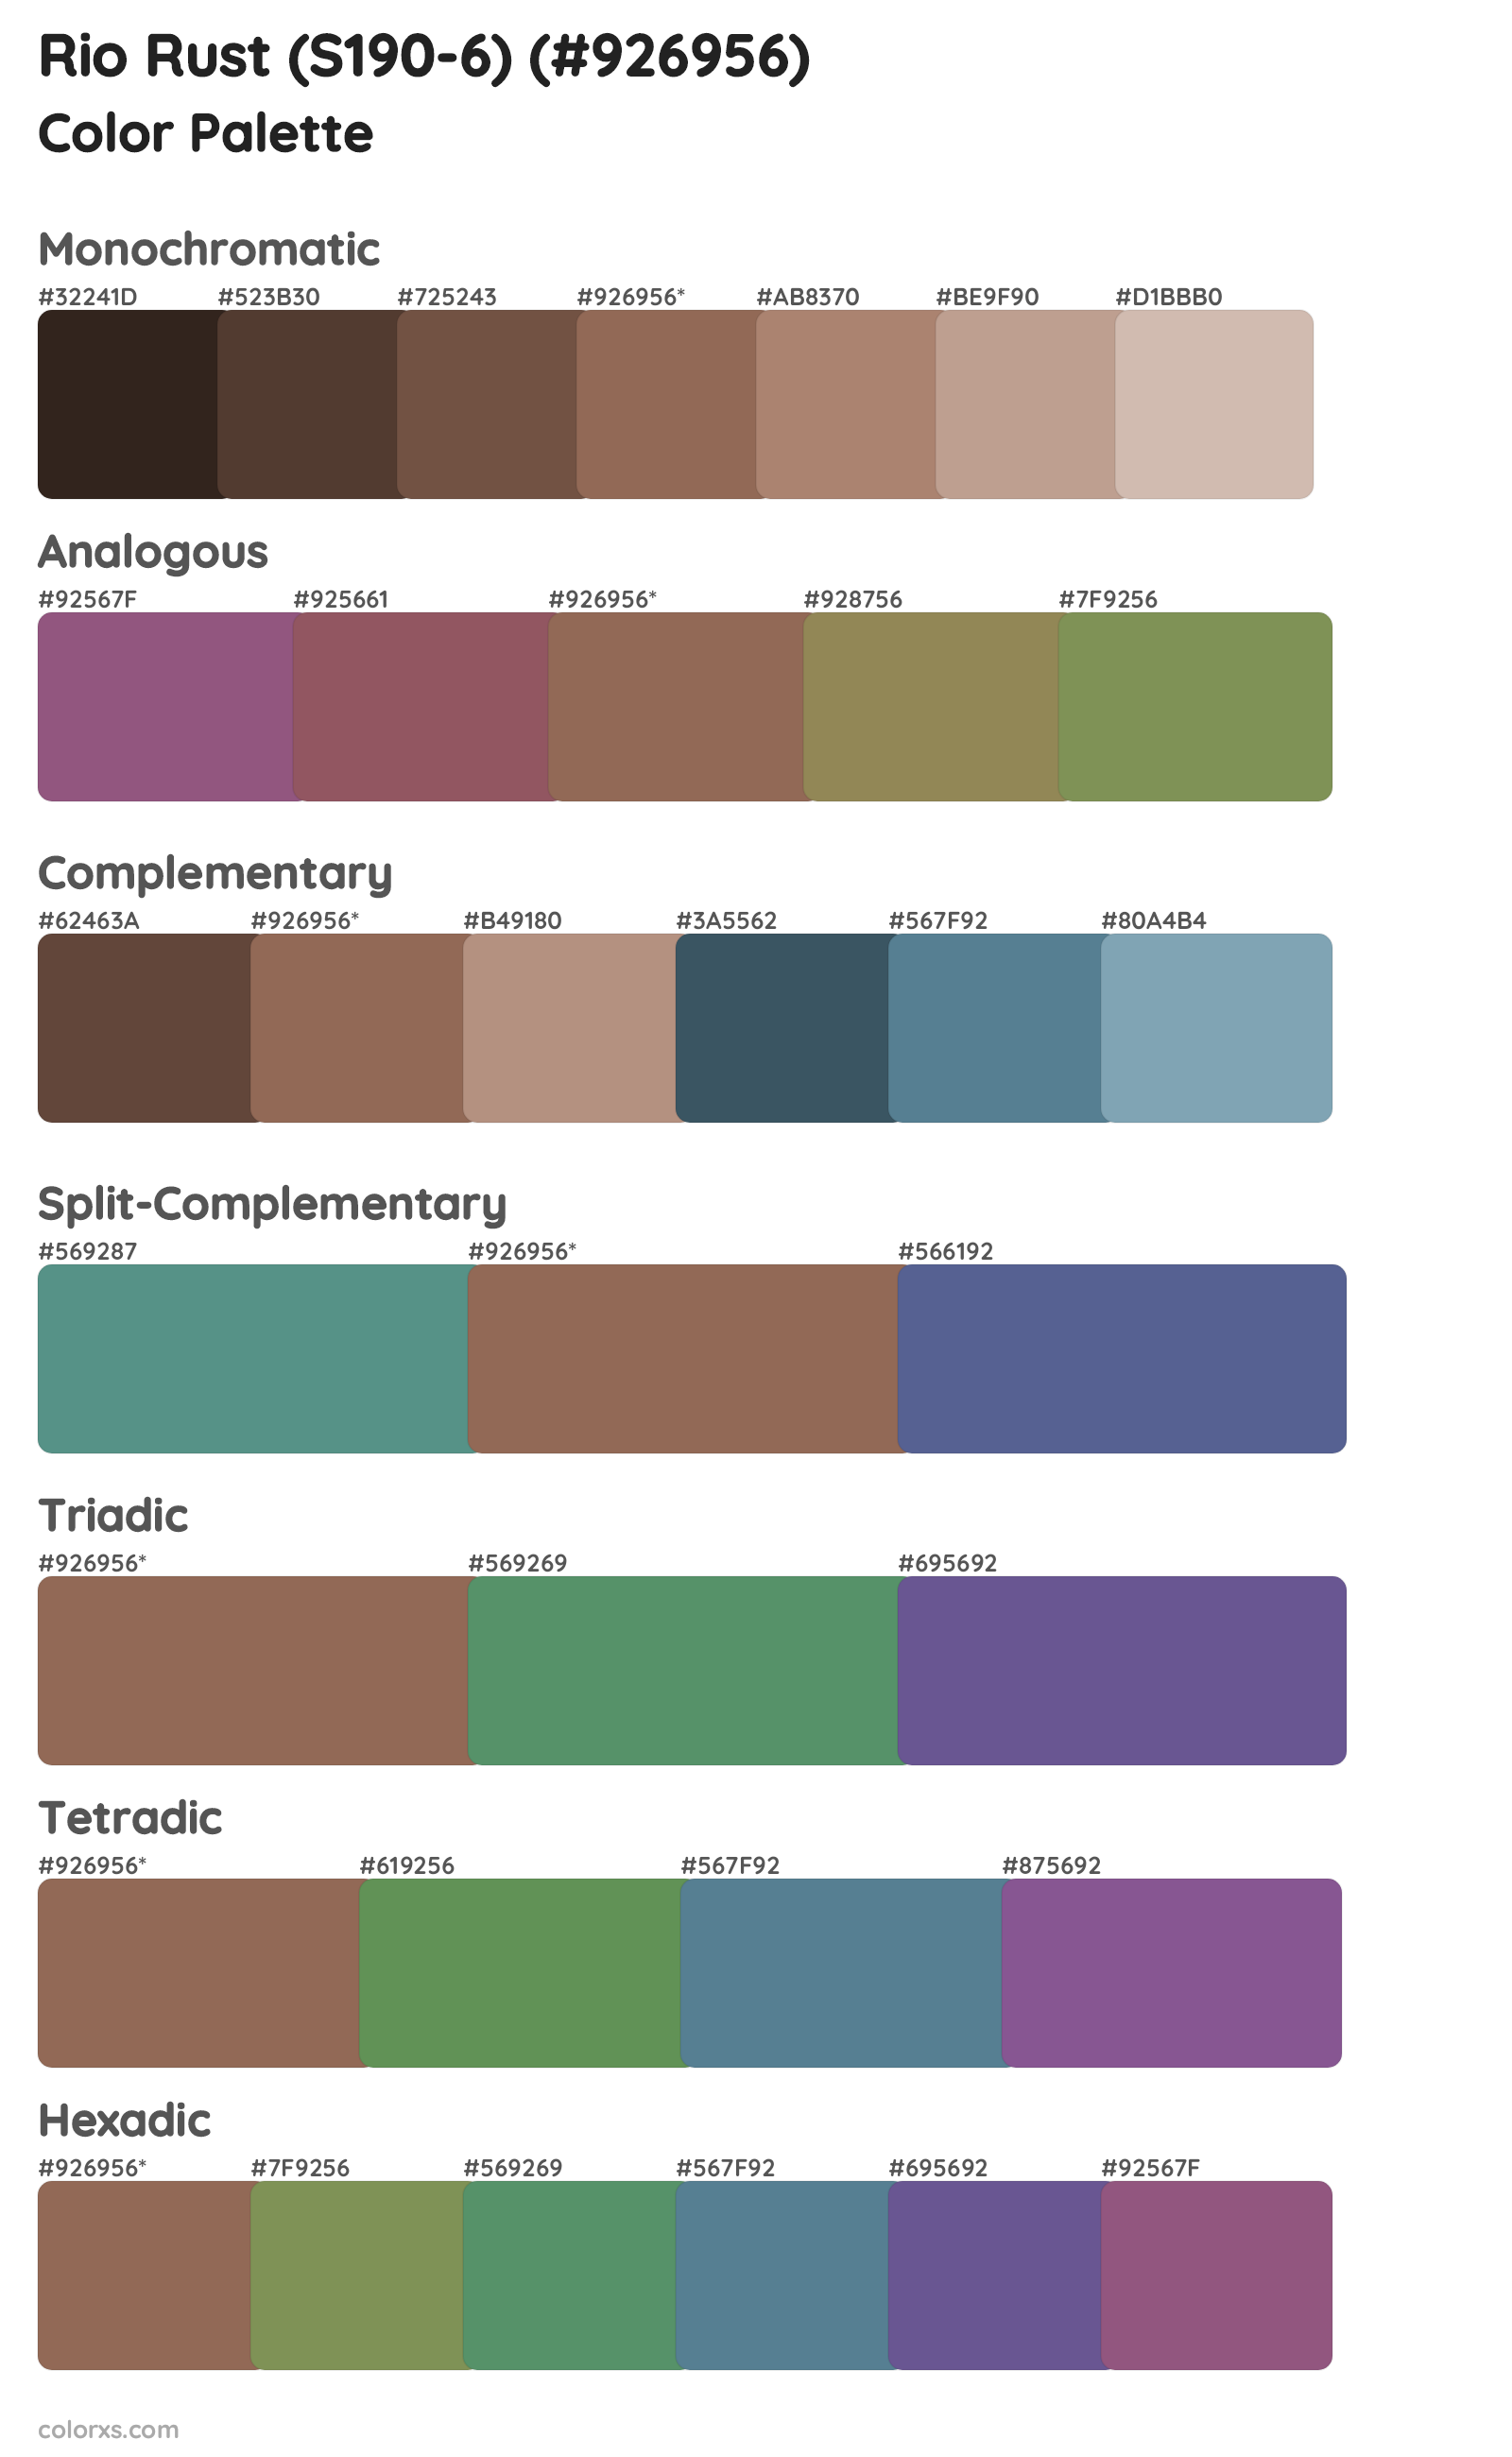 Rio Rust (S190-6) Color Scheme Palettes